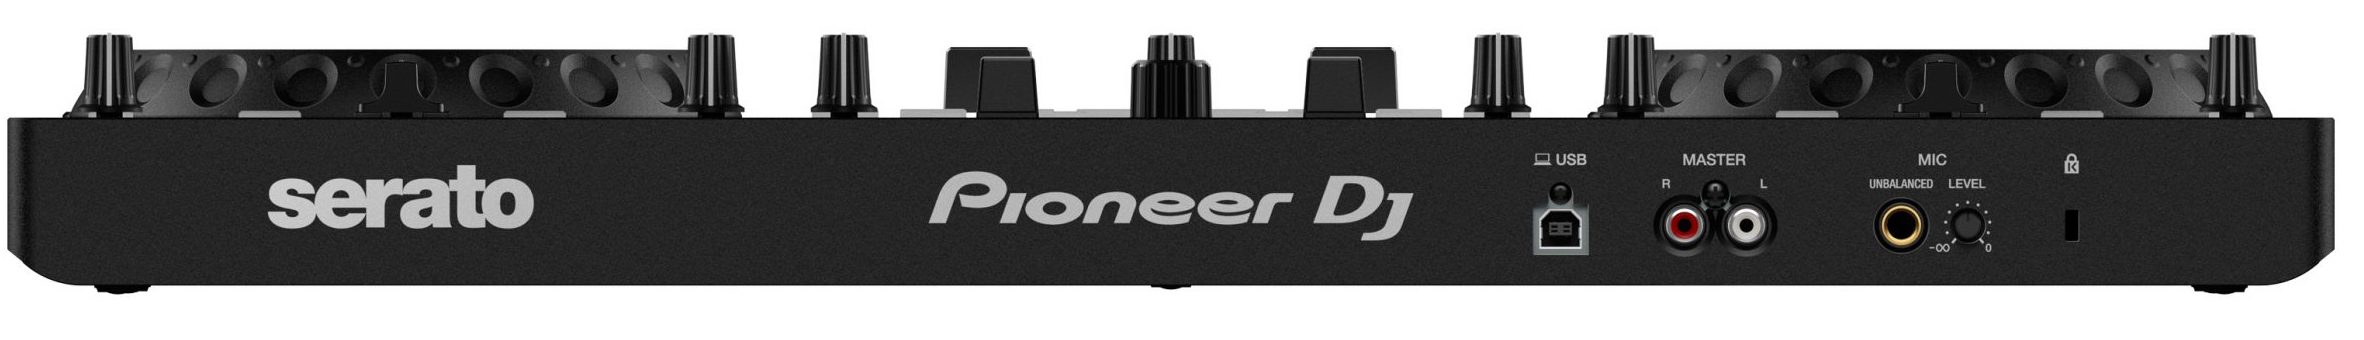 Pioneer Dj Ddj-rev1 - USB DJ-Controller - Variation 3